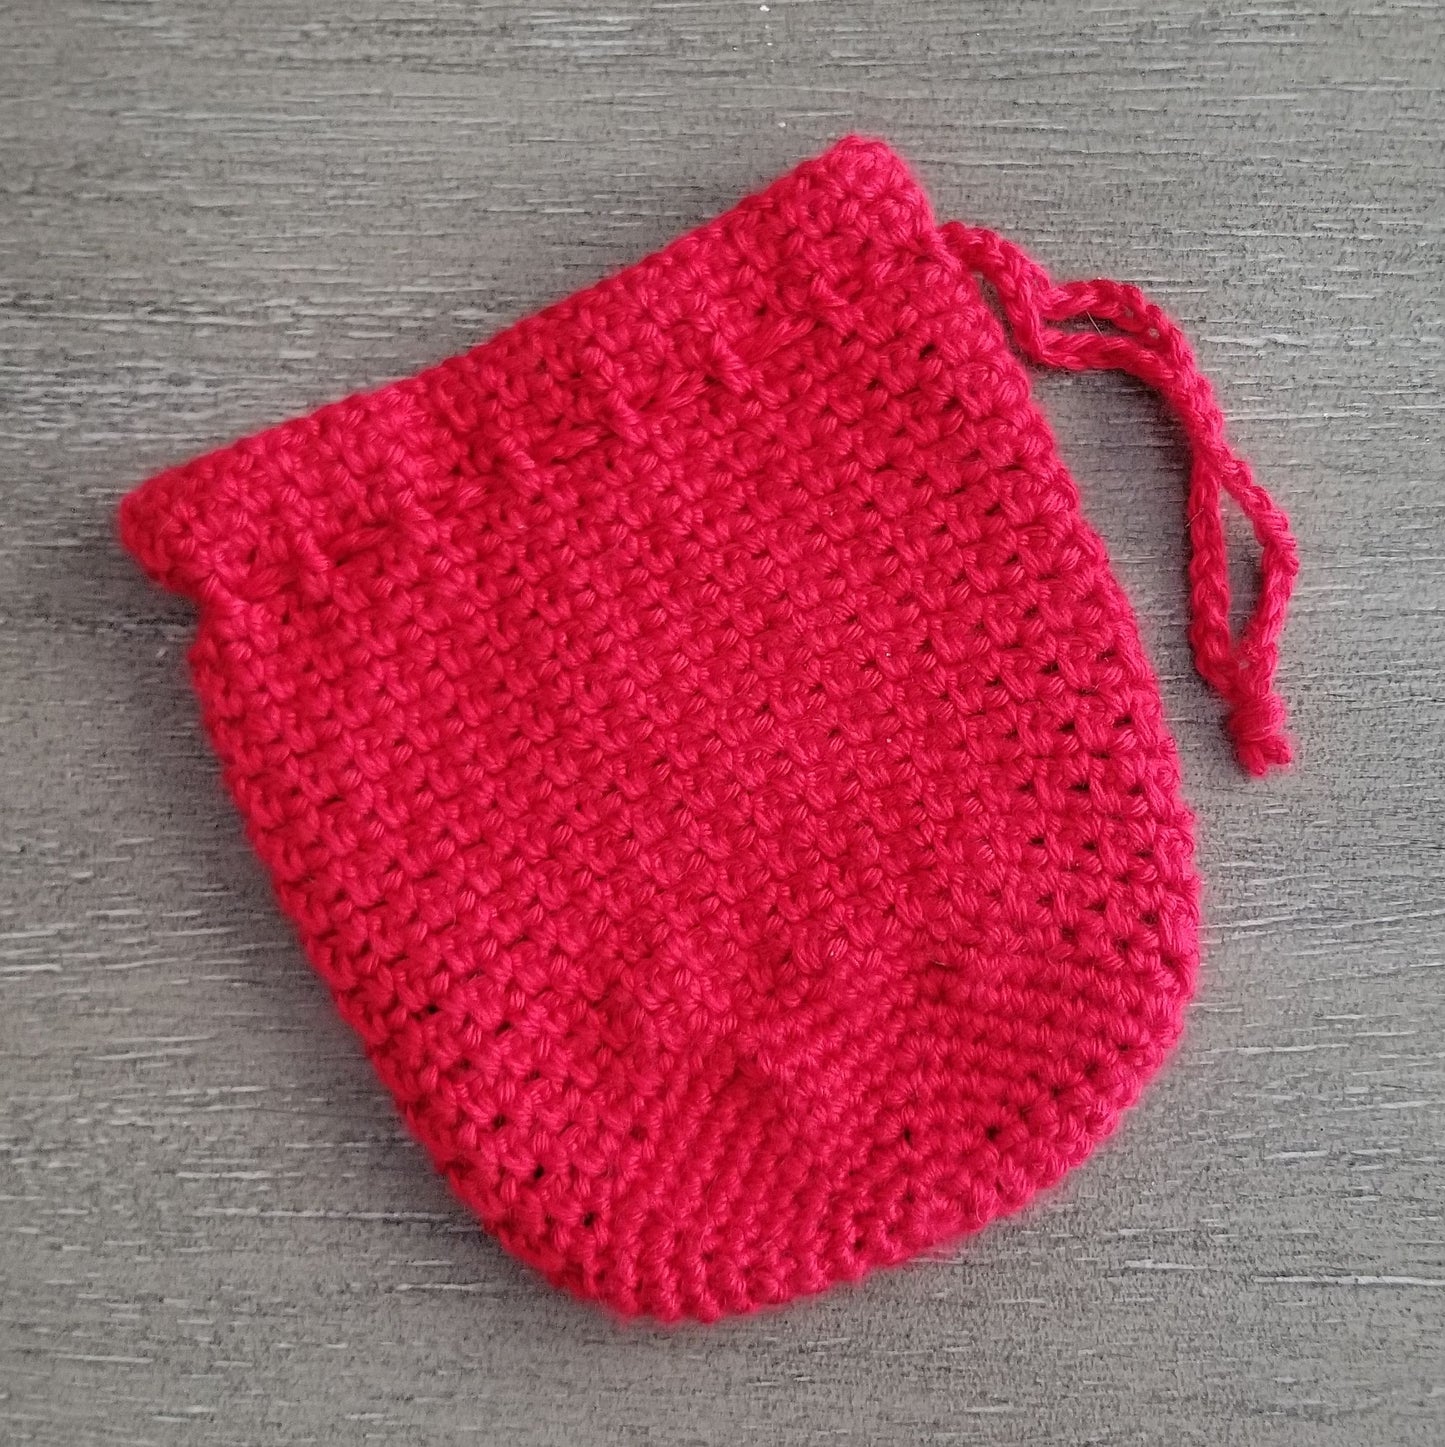 Woven Drawstring Bag Crochet Pattern PDF